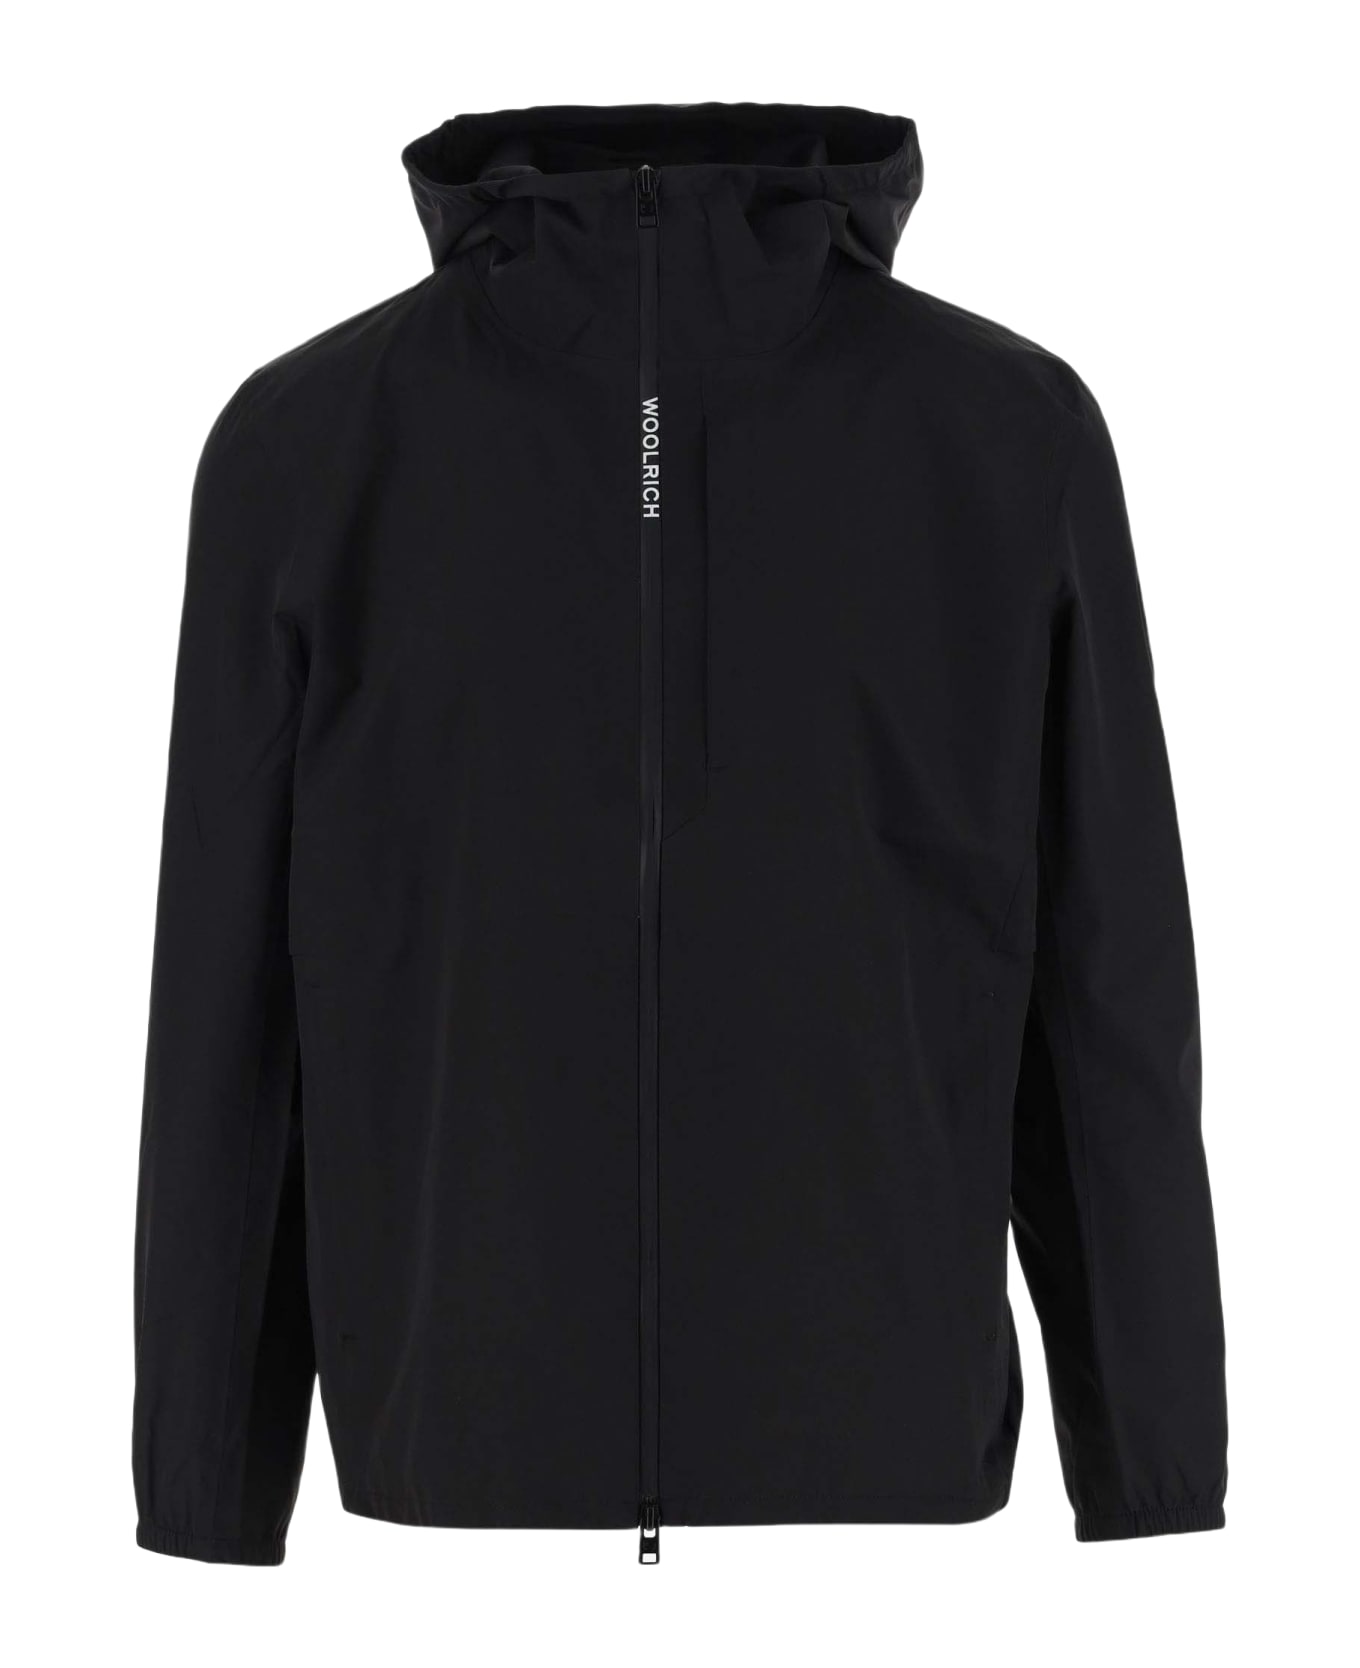 Woolrich Pacific Waterproof Jacket With Hood - Black